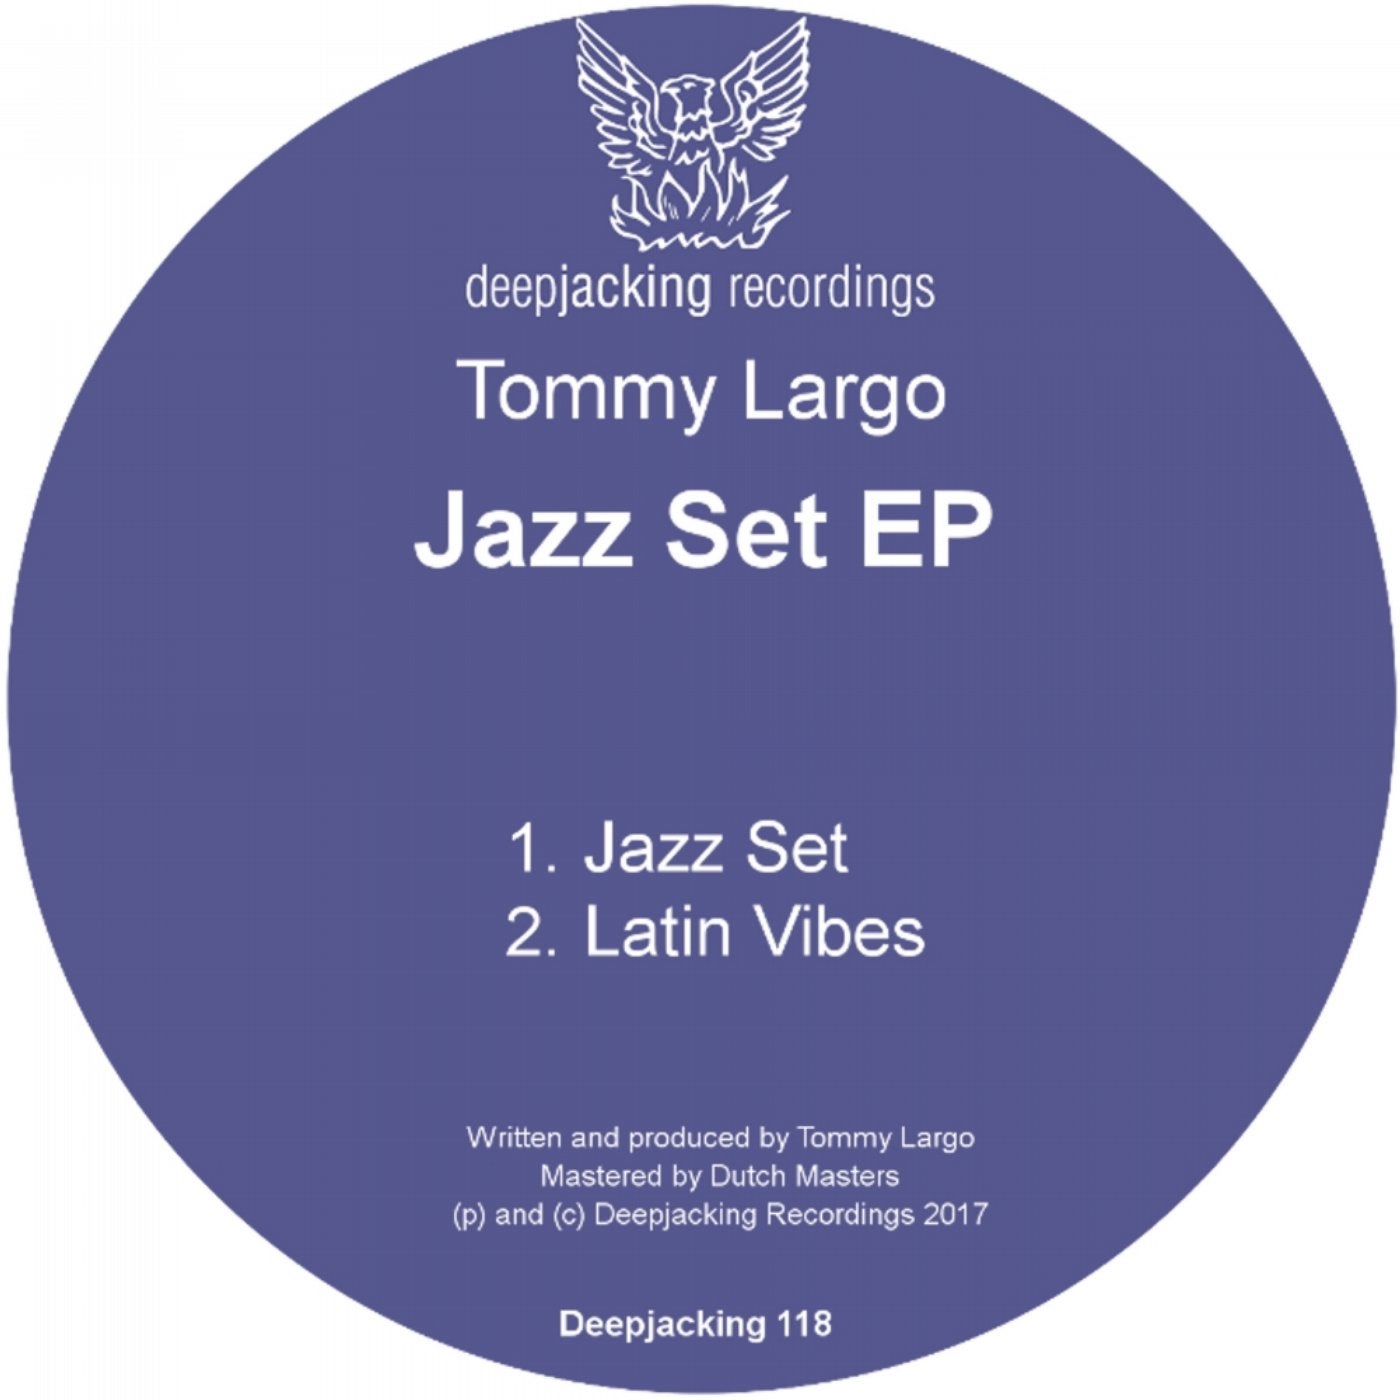 Jazz Set EP